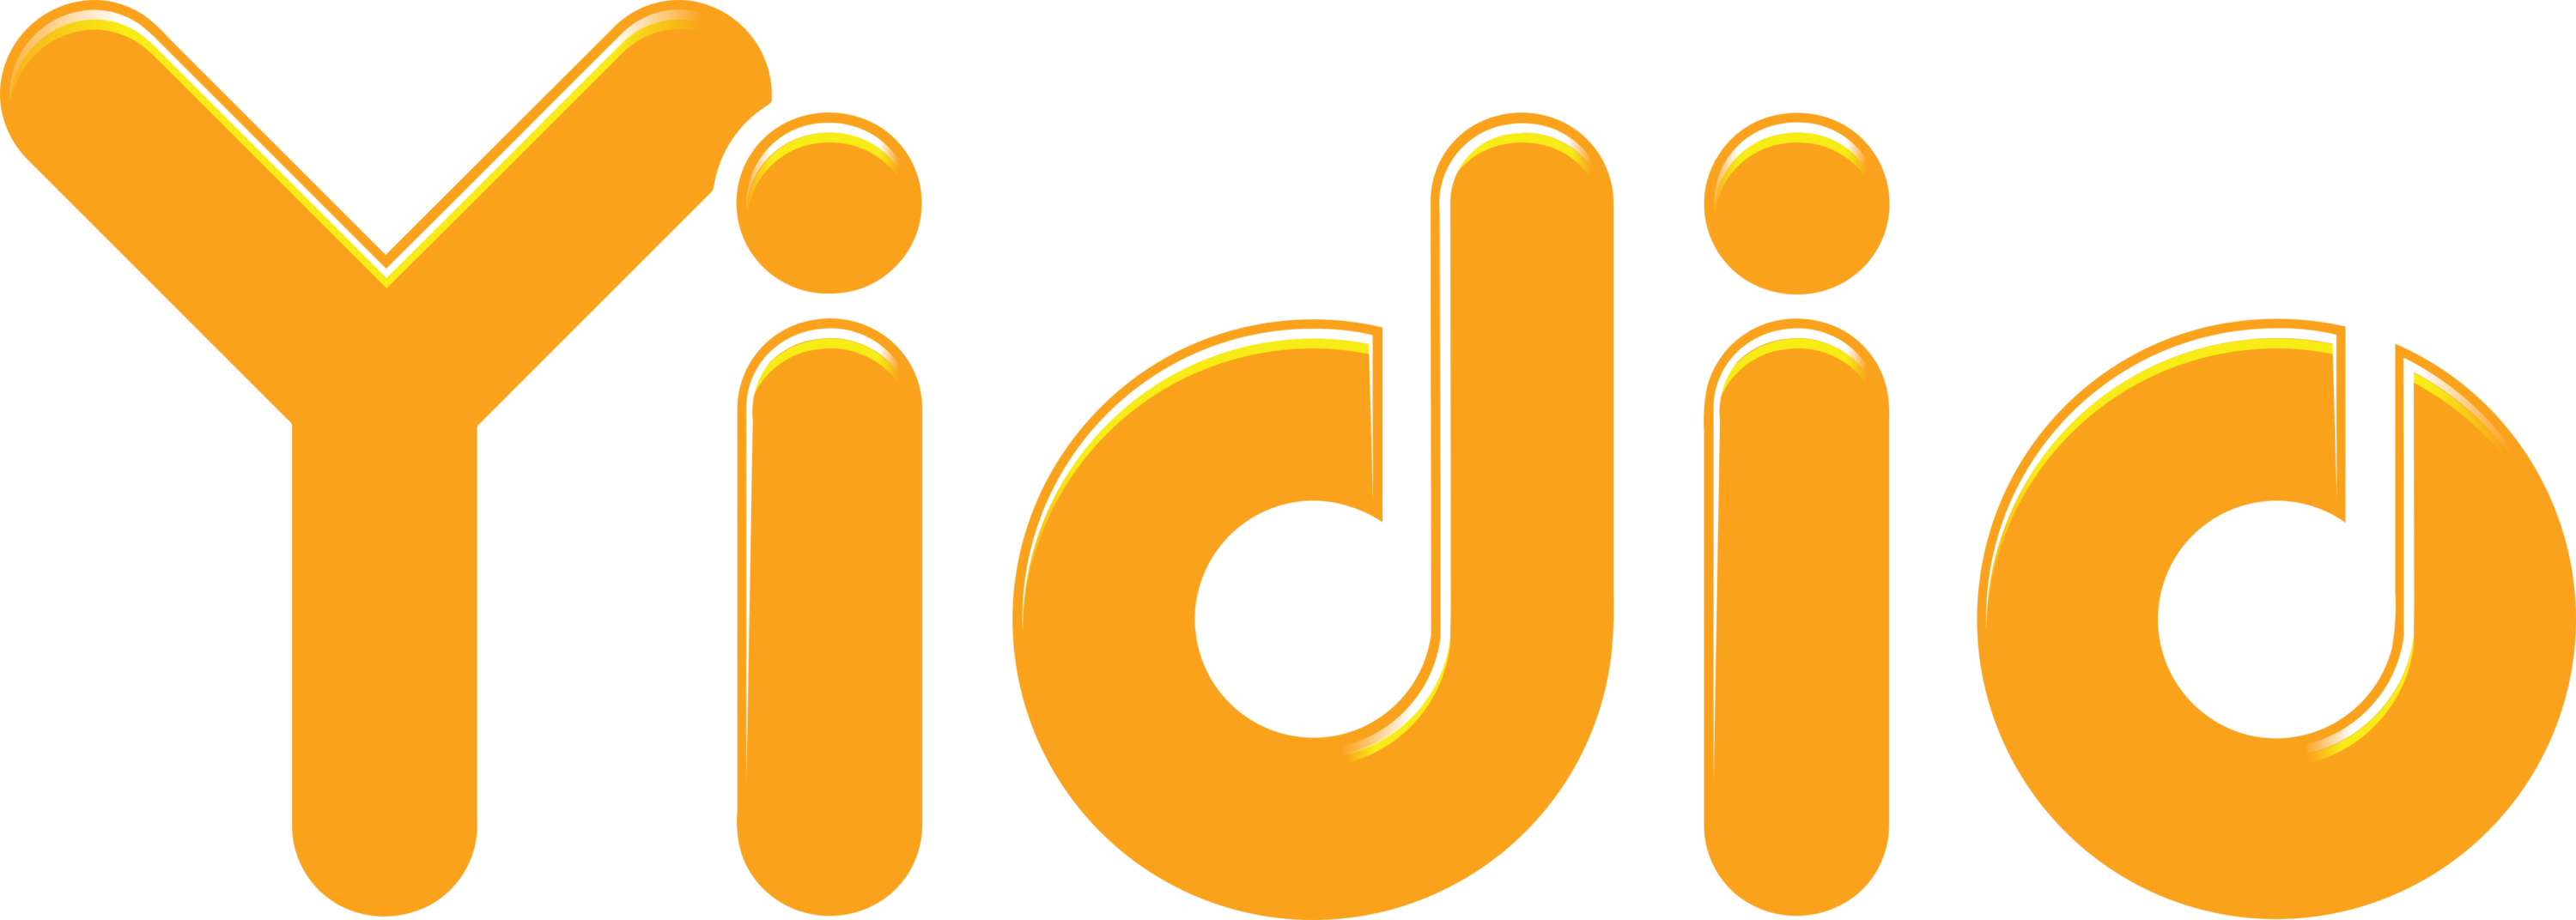 Yidio LLC Logo